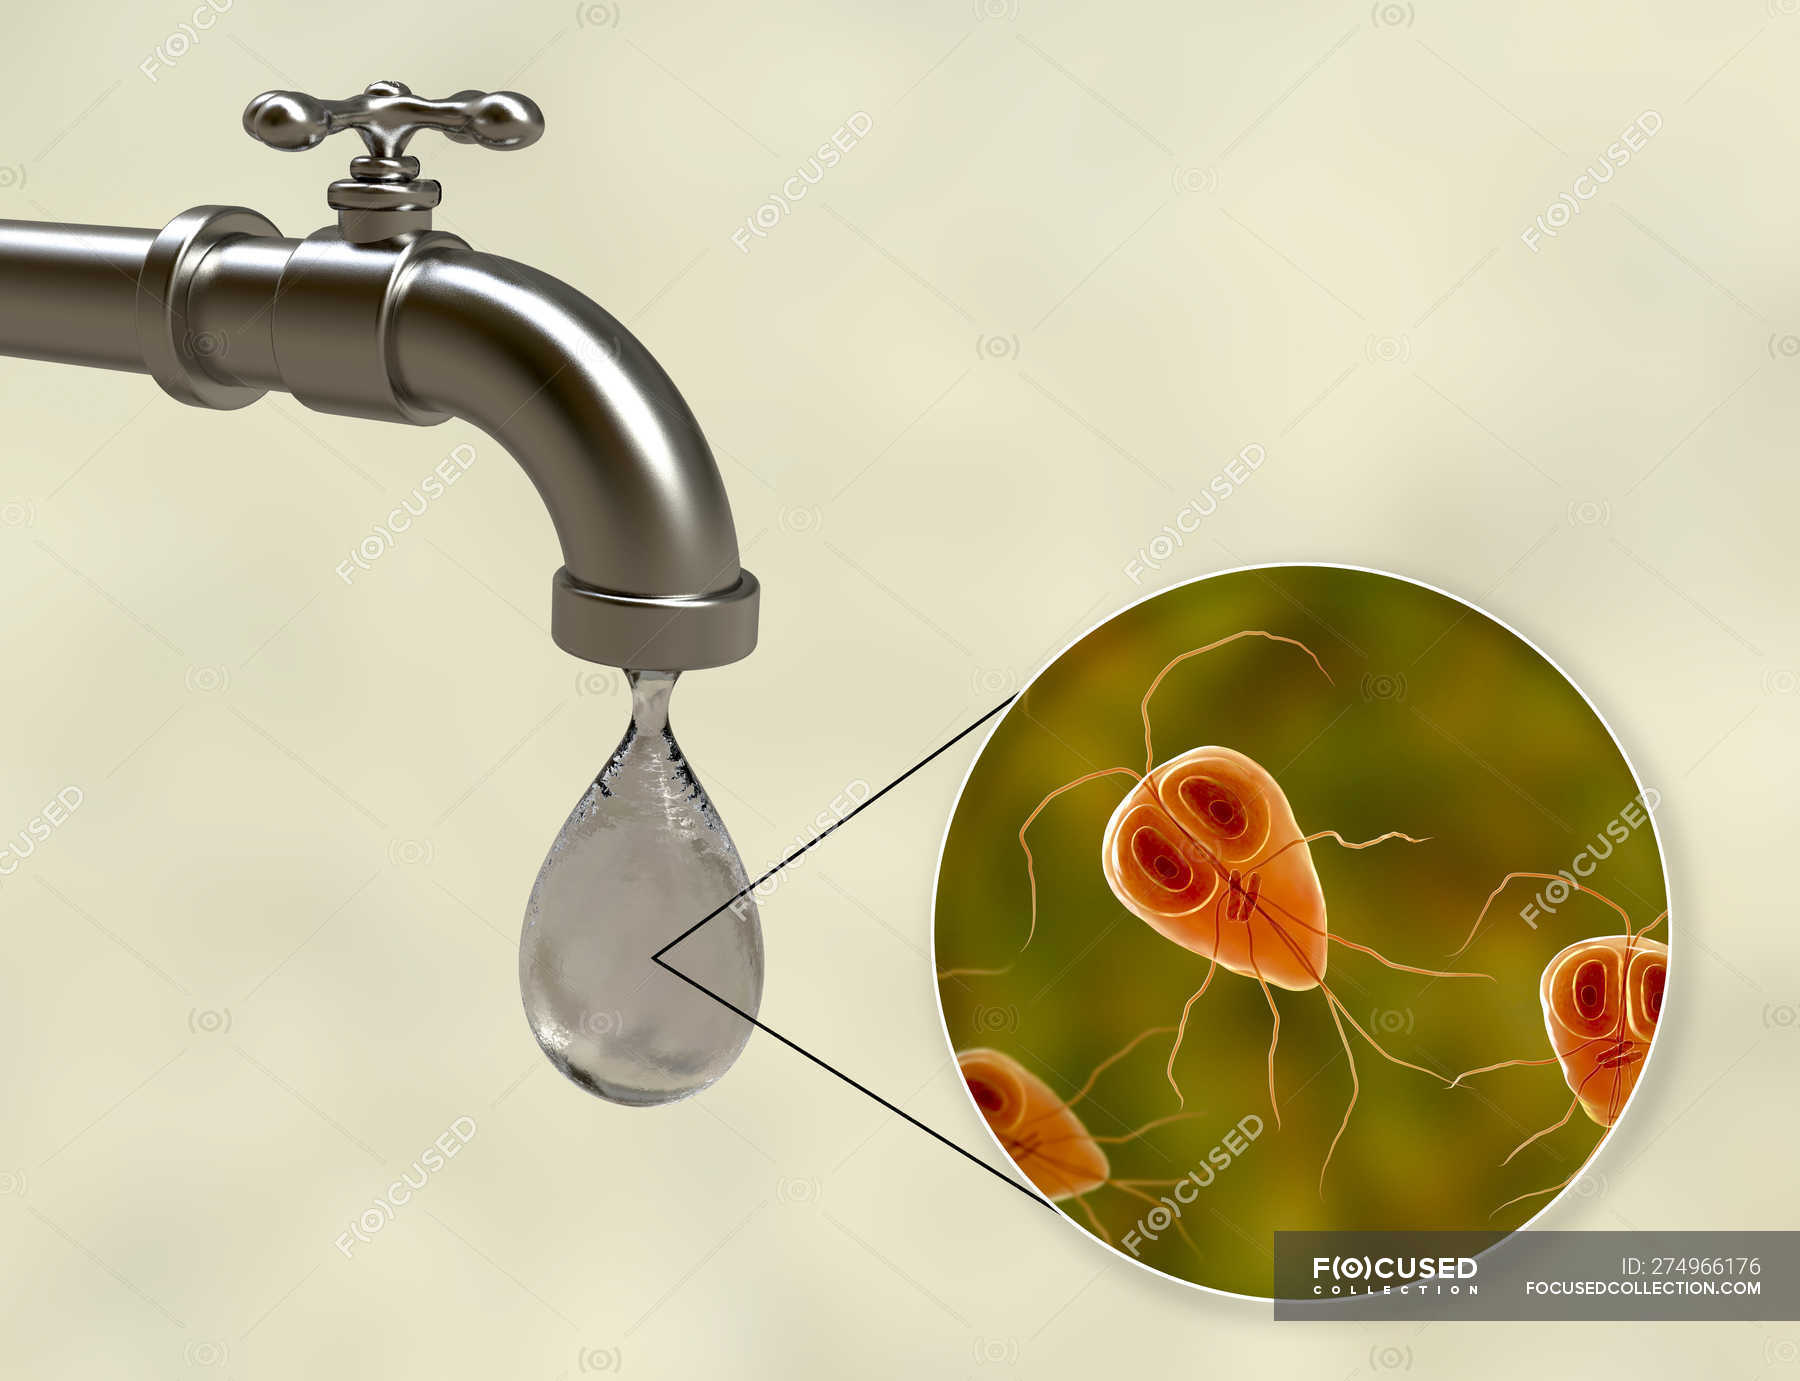 giardia in tap water)